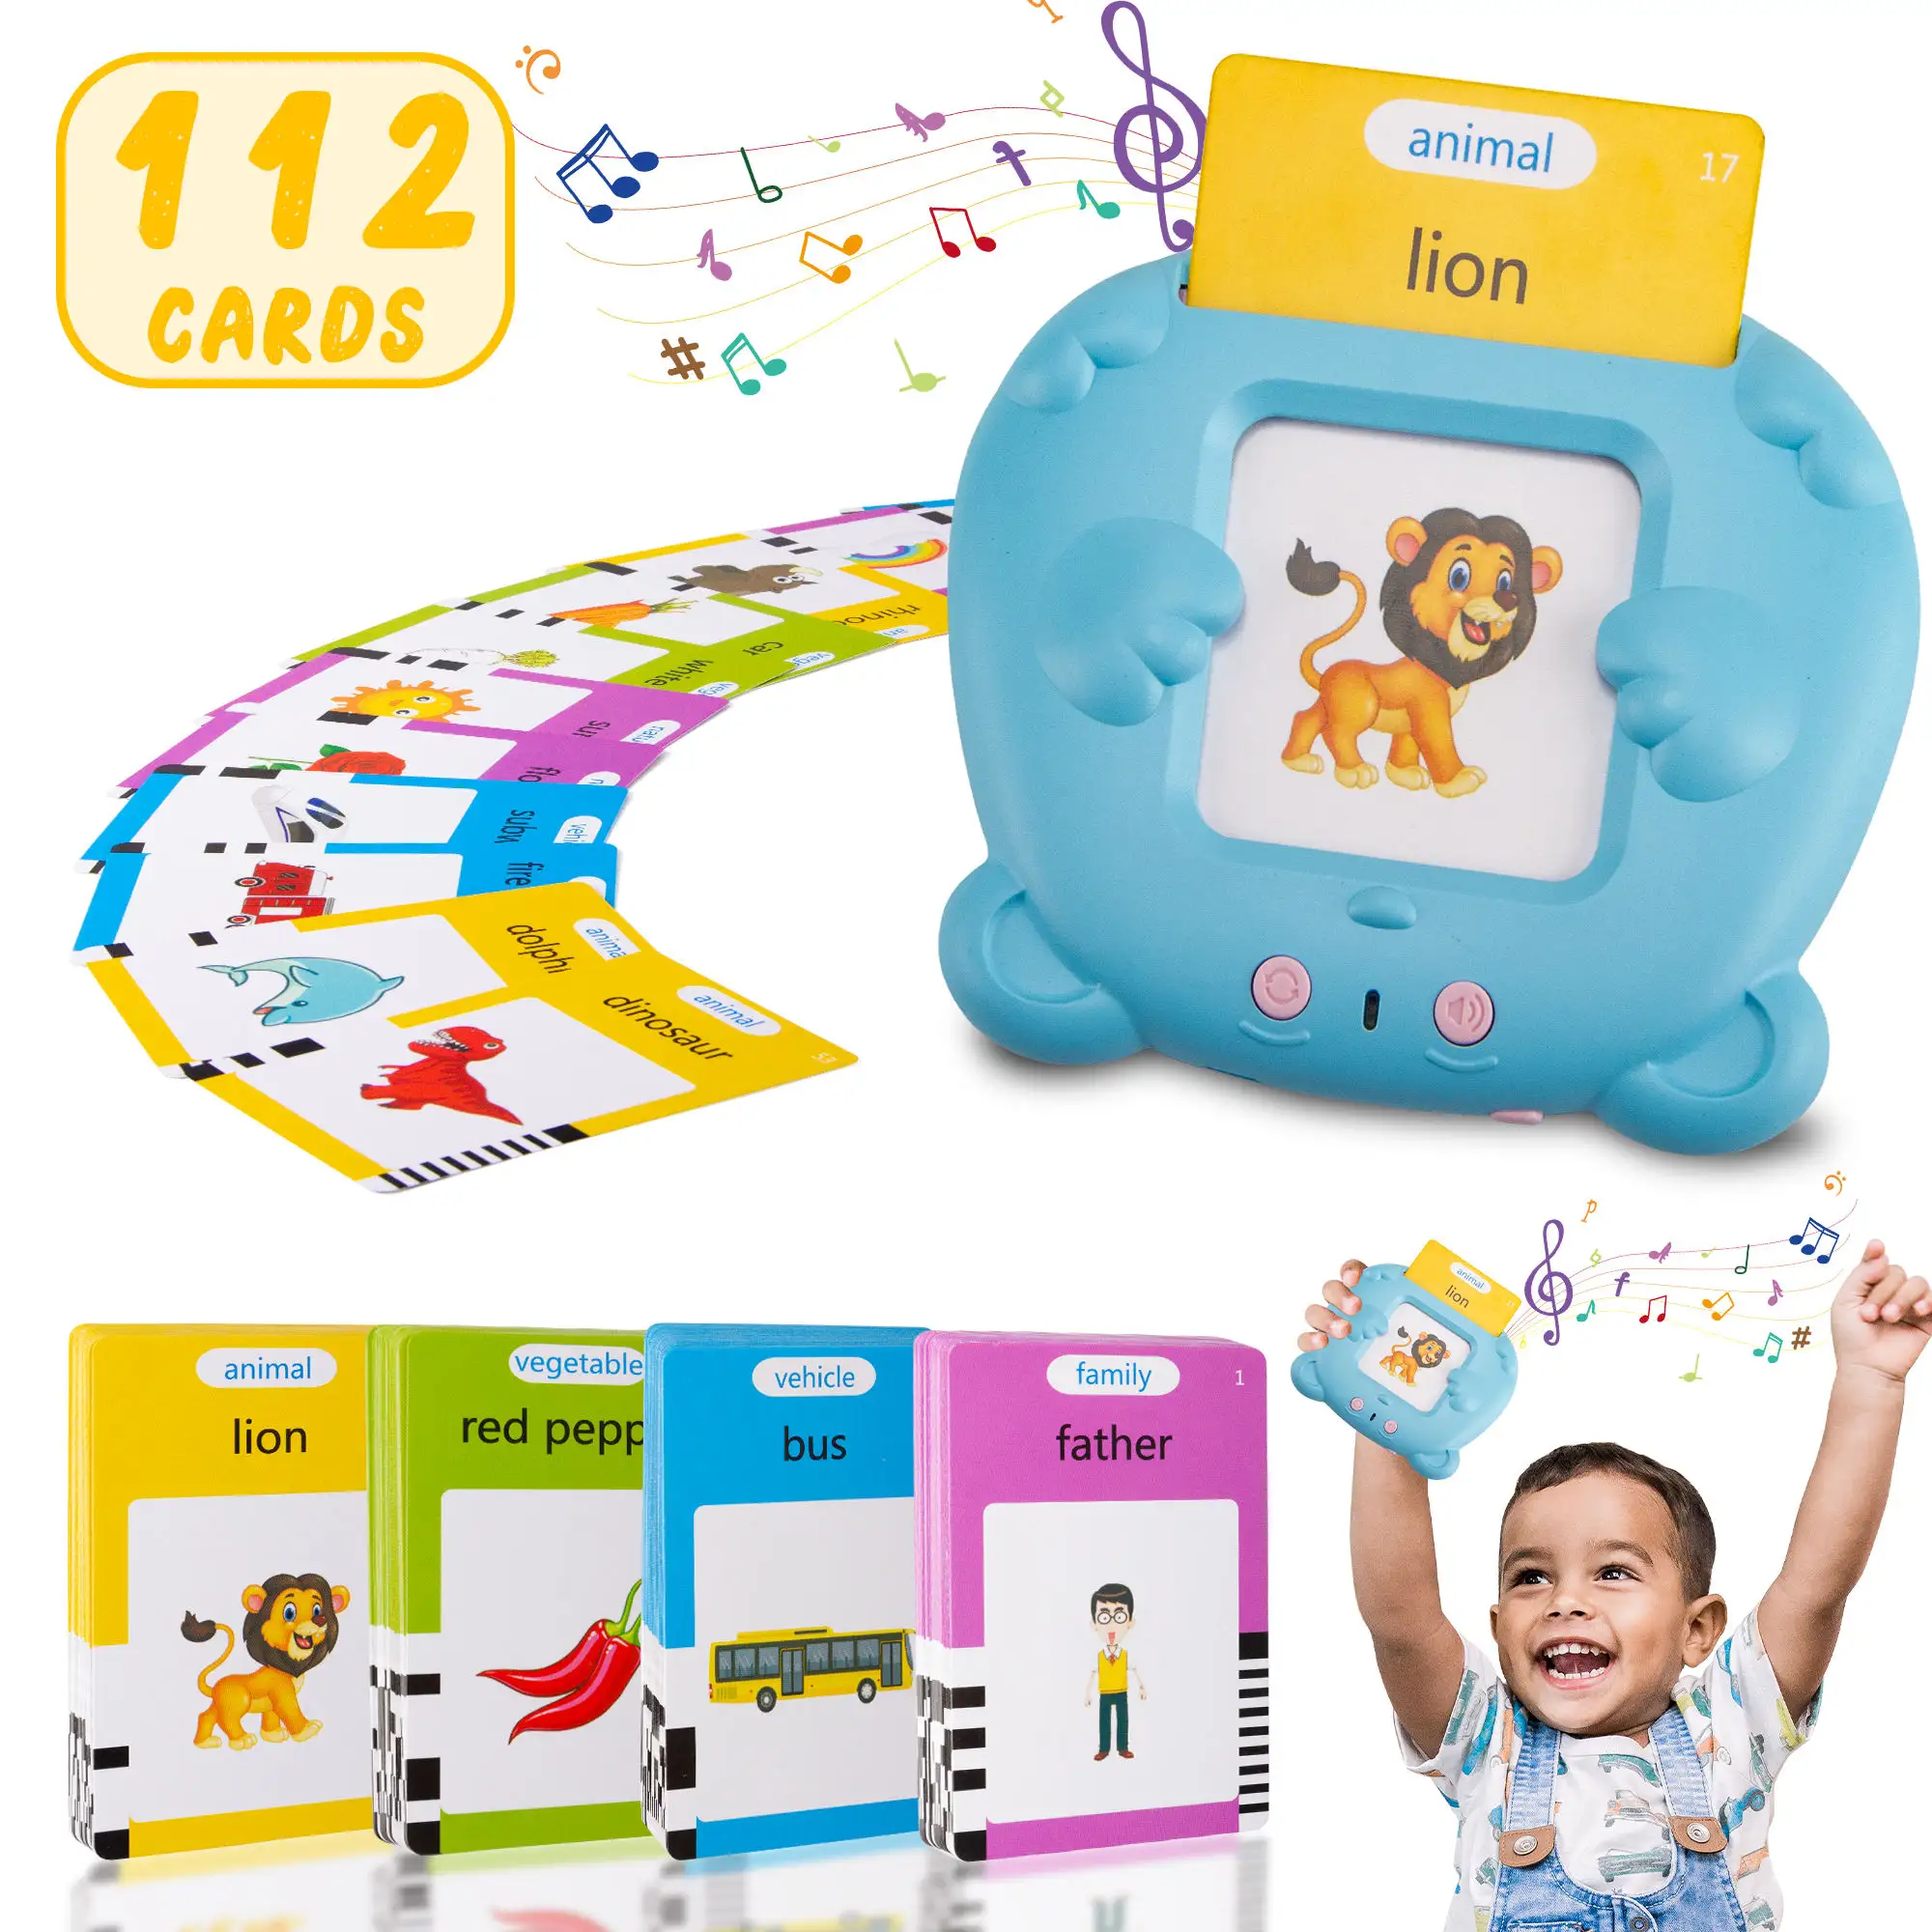 Nouveau design tout-petits dispositif d'apprentissage jouet cartes cognitives jouet éducatif cartes Flash pour les enfants